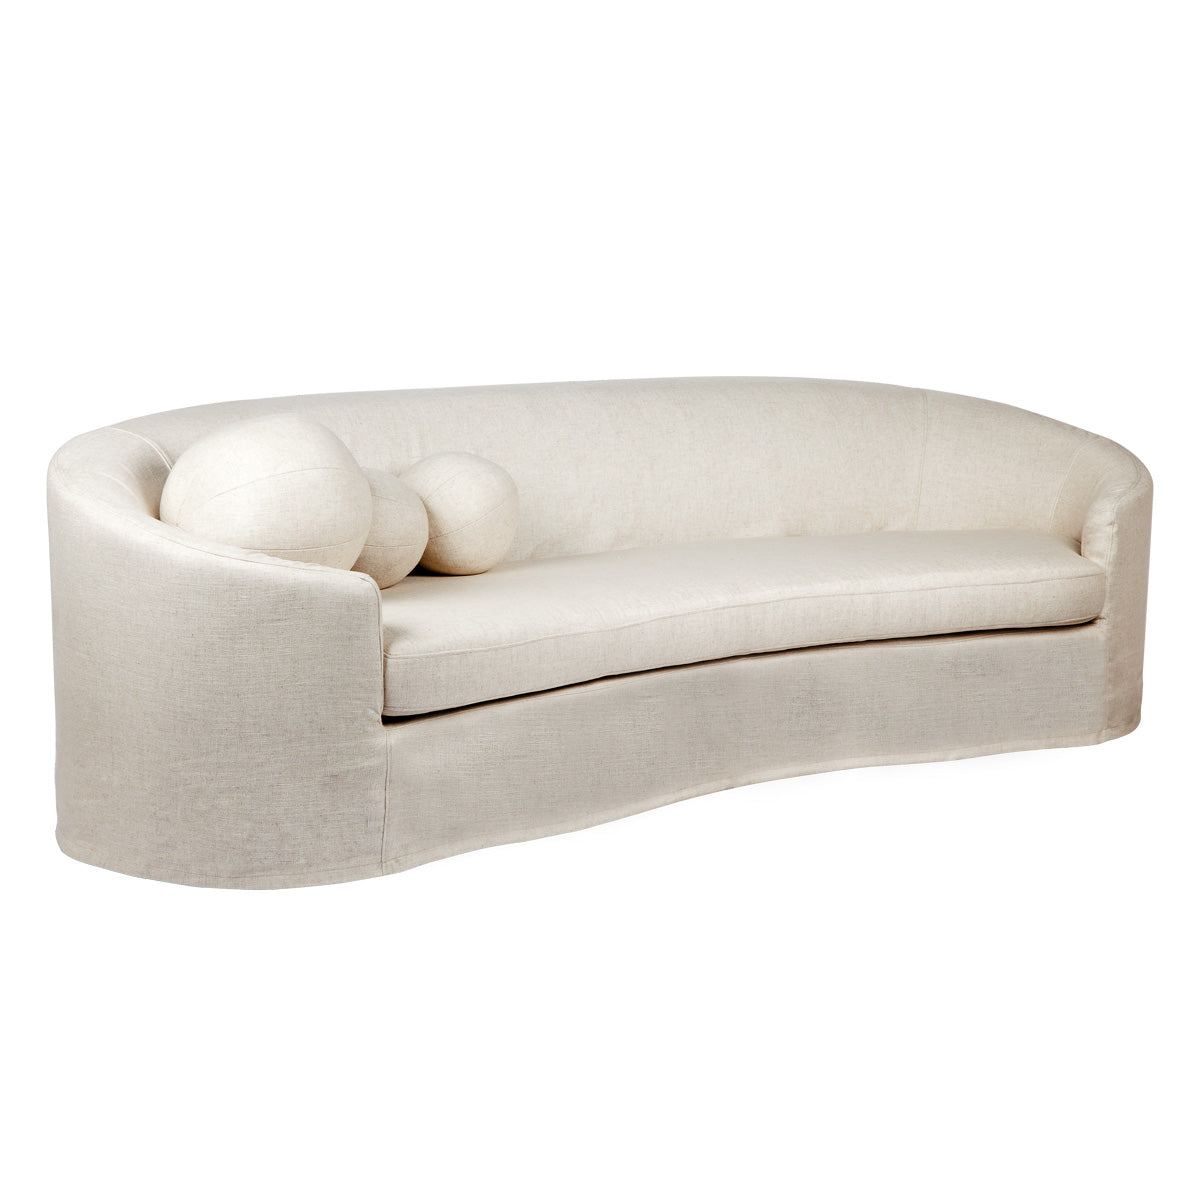 Elle 3 Seater Slip Cover Sofa - Natural Linen